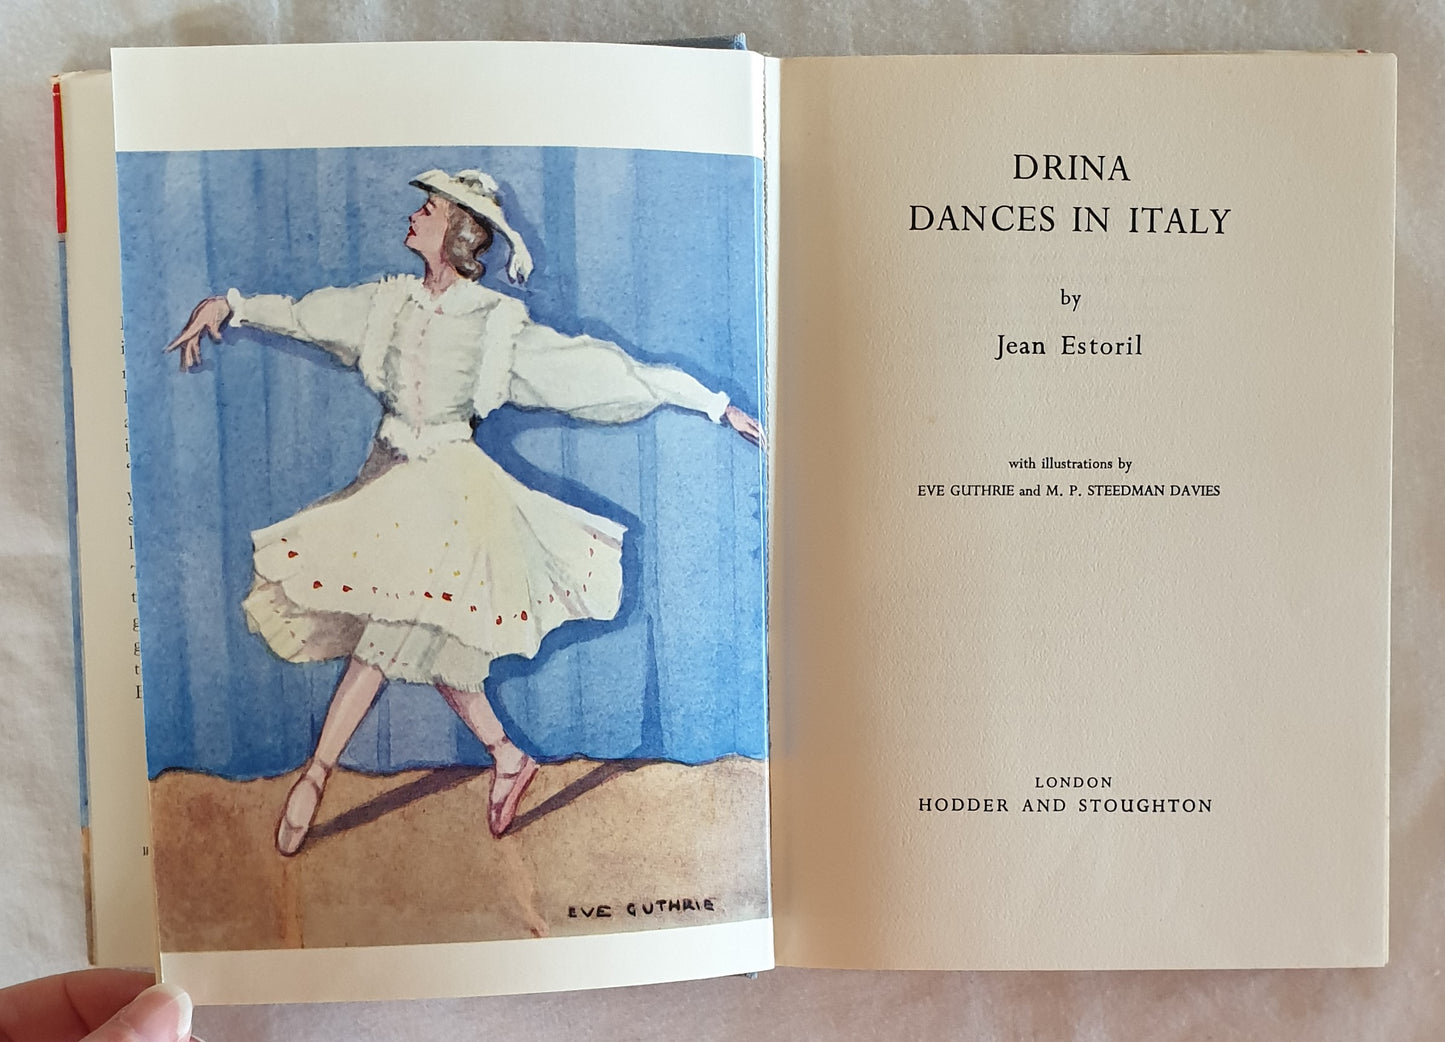 Drina Dances in Italy by Jean Estoril